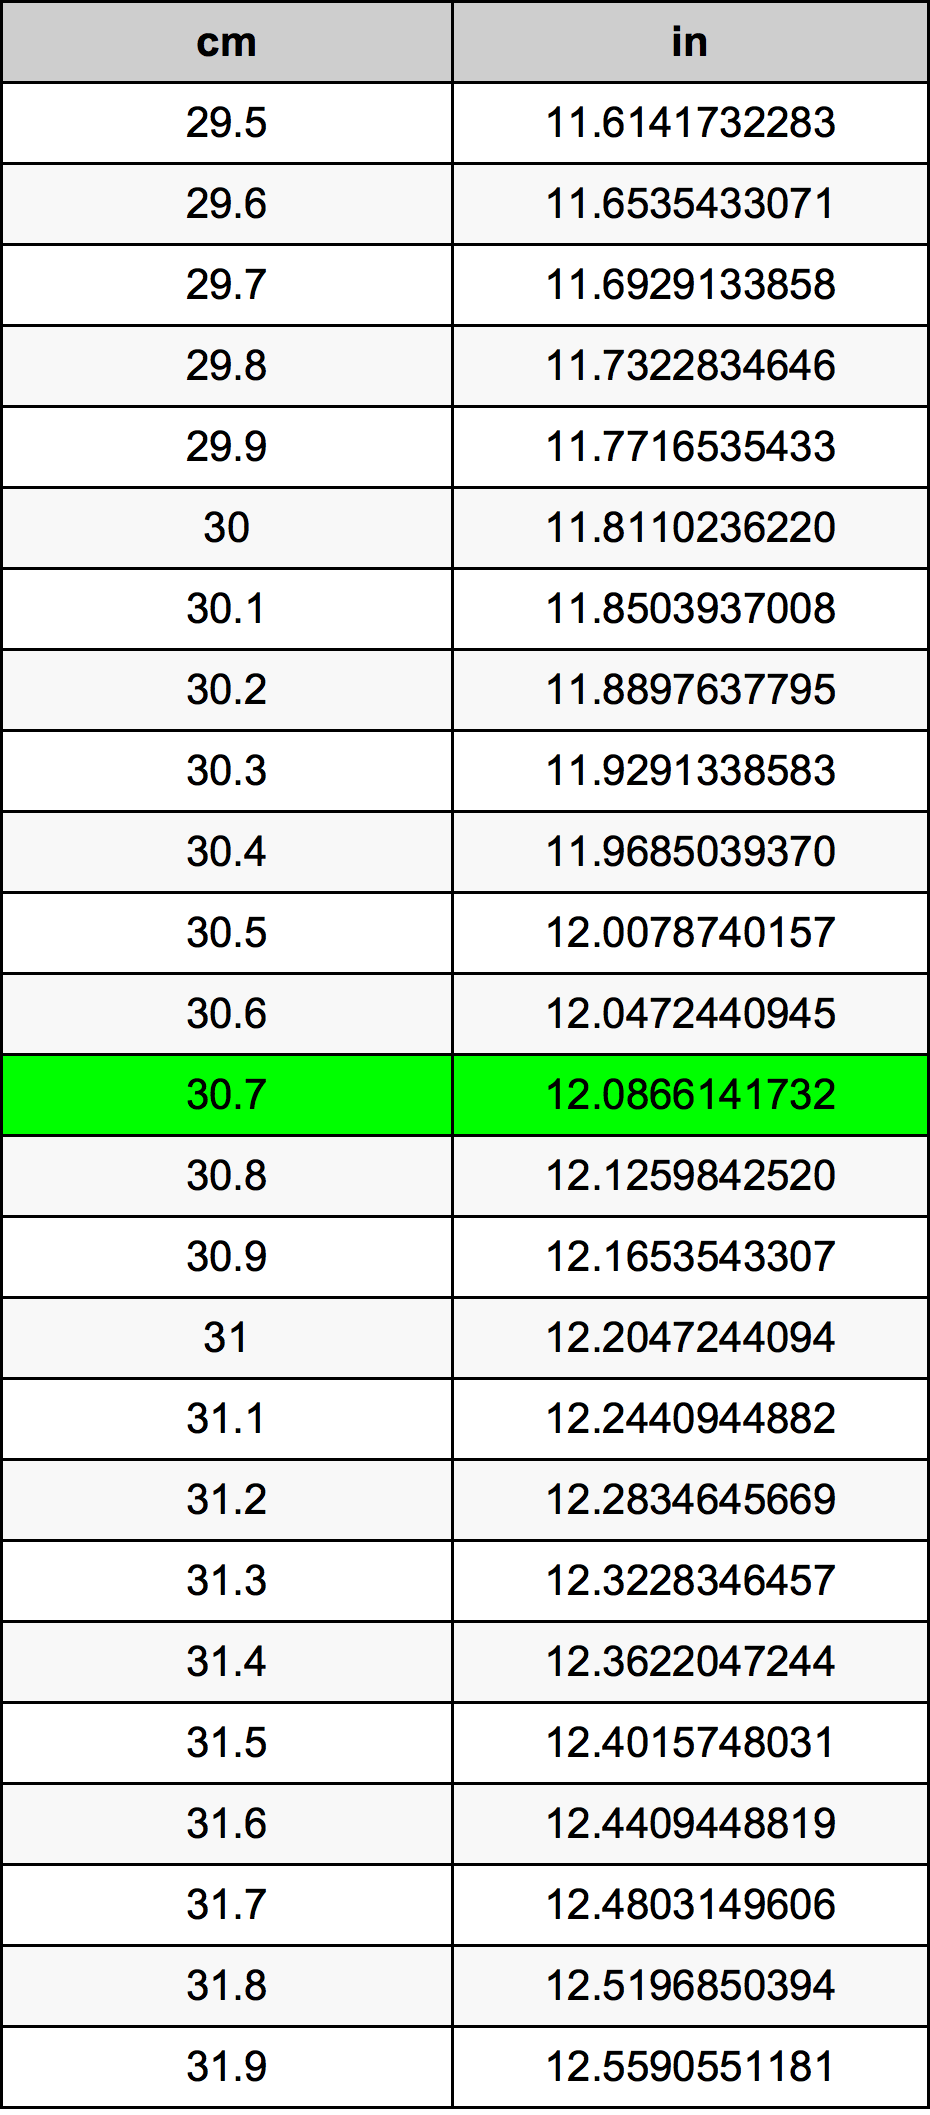 30.7 Centiméter átszámítási táblázat